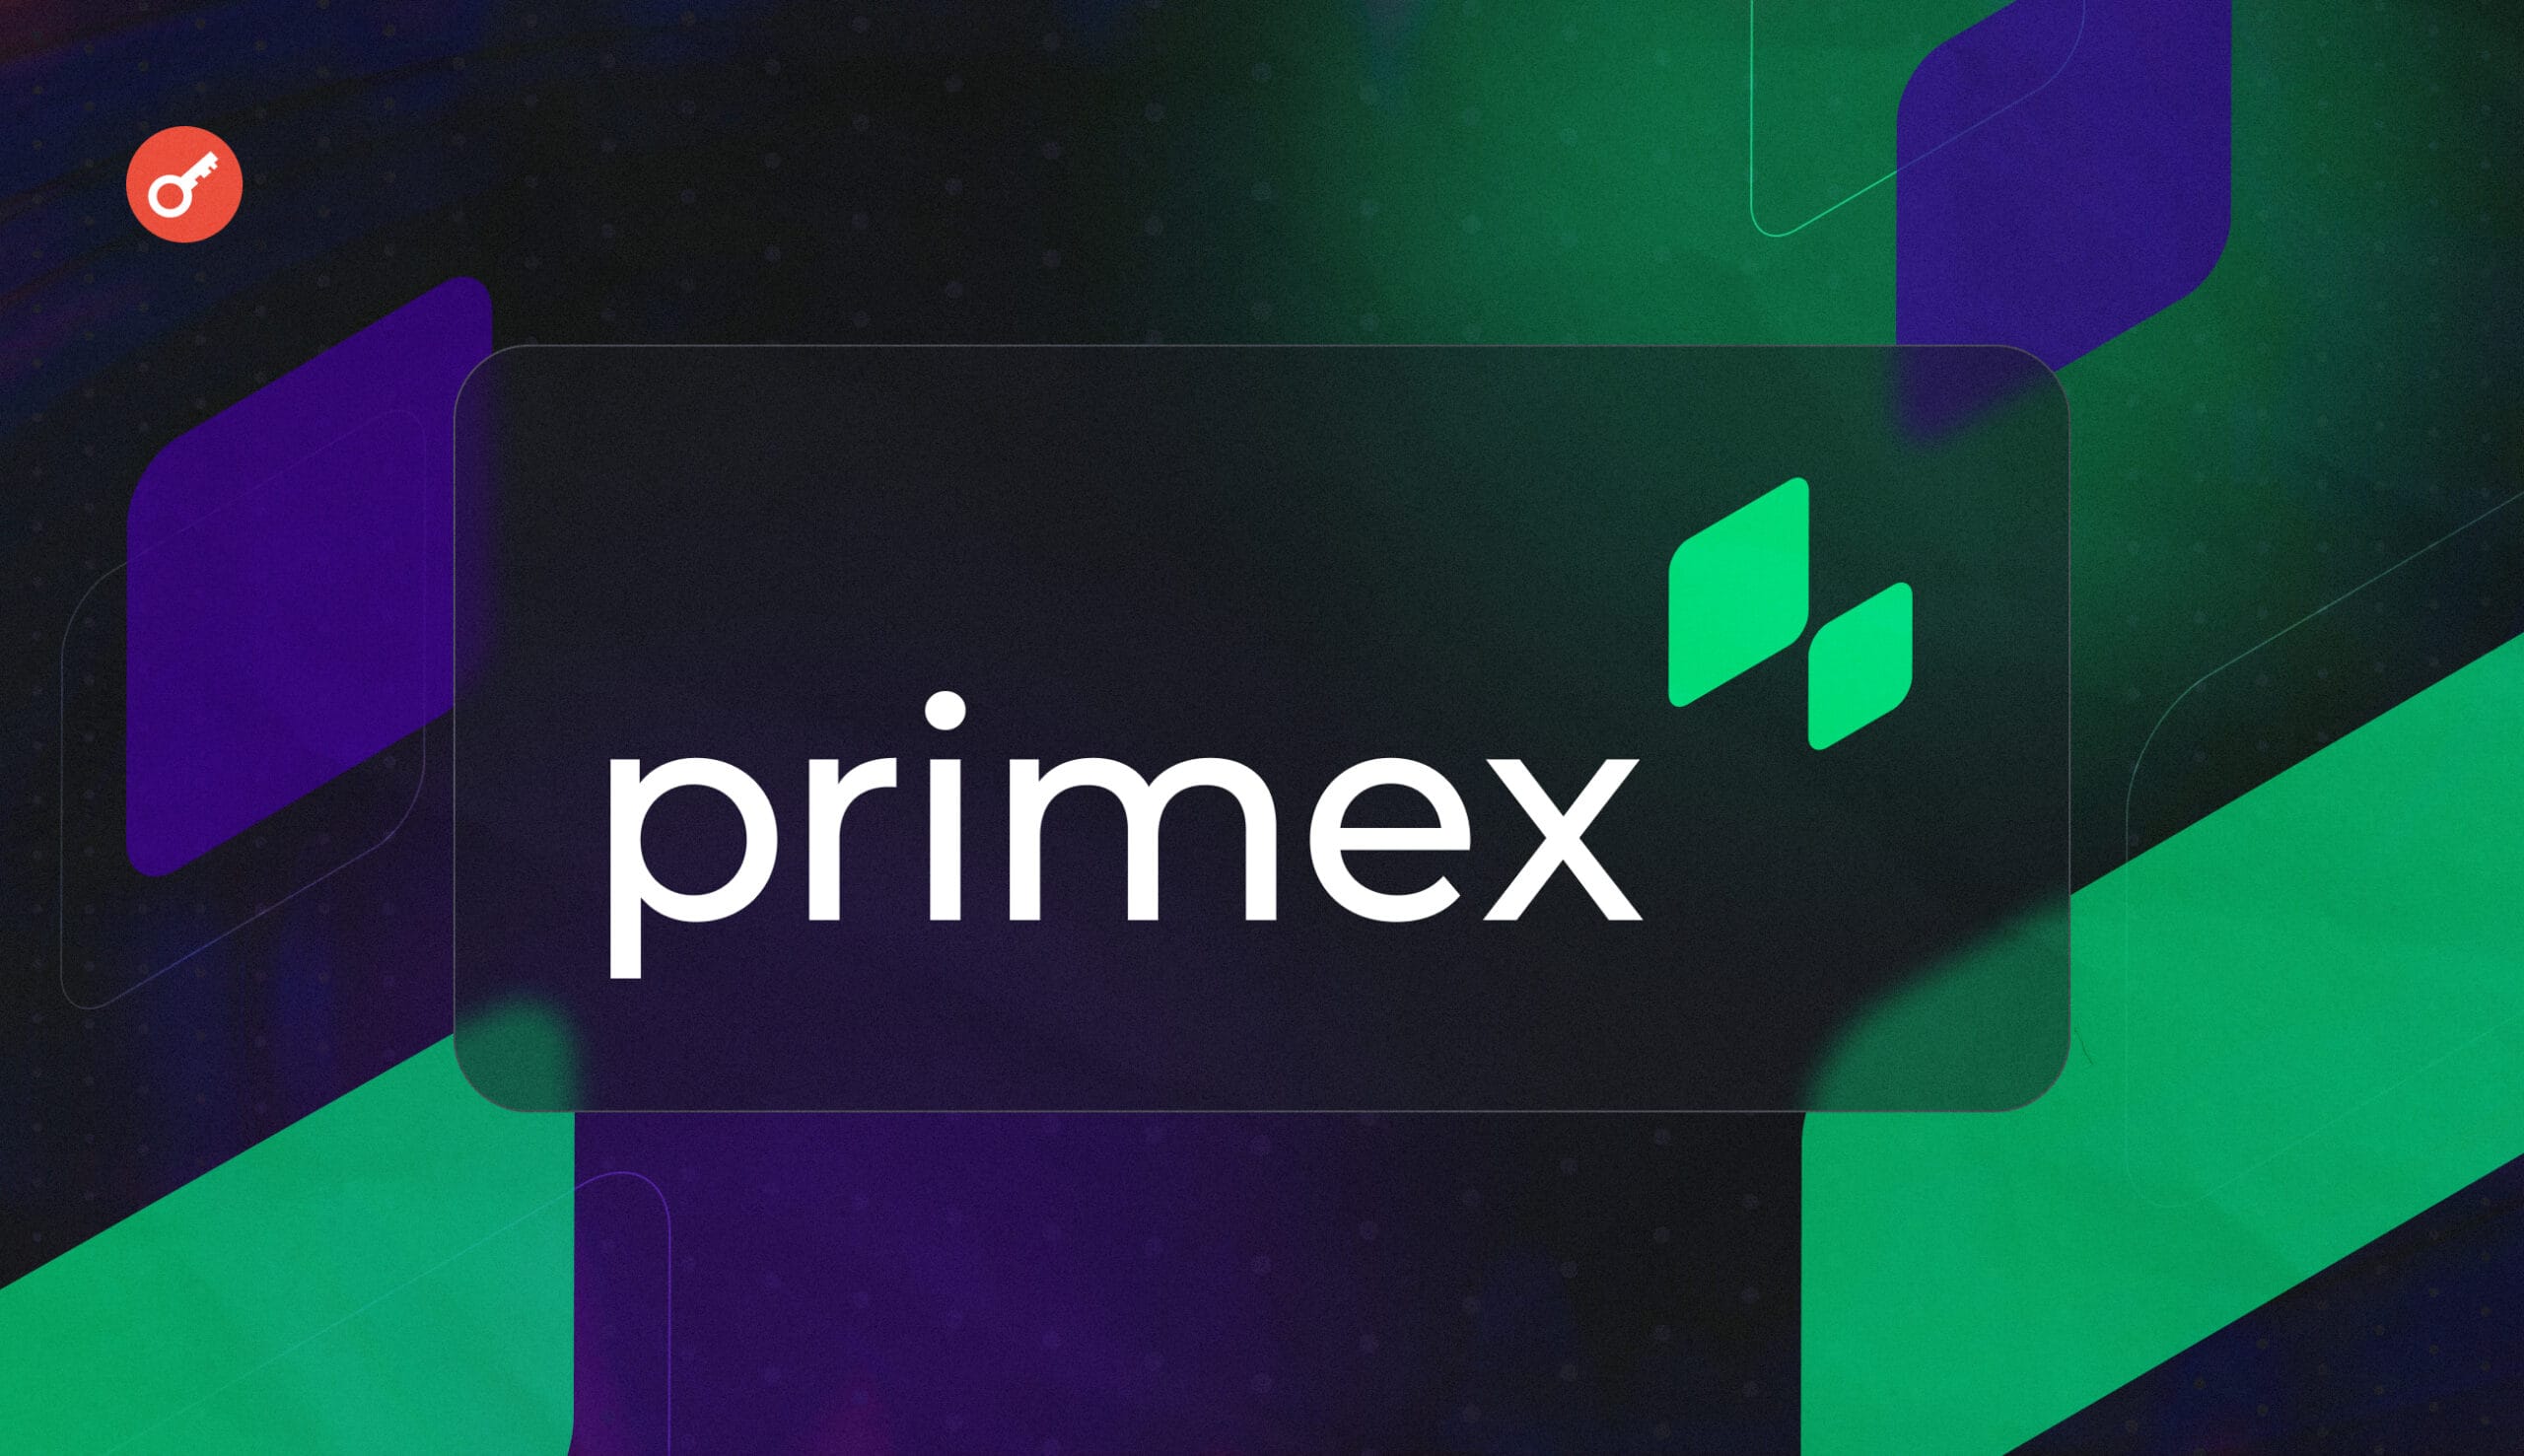 Primex випустили оновлення 0.3.0 для бета-версії свого додатка. Головний колаж новини.